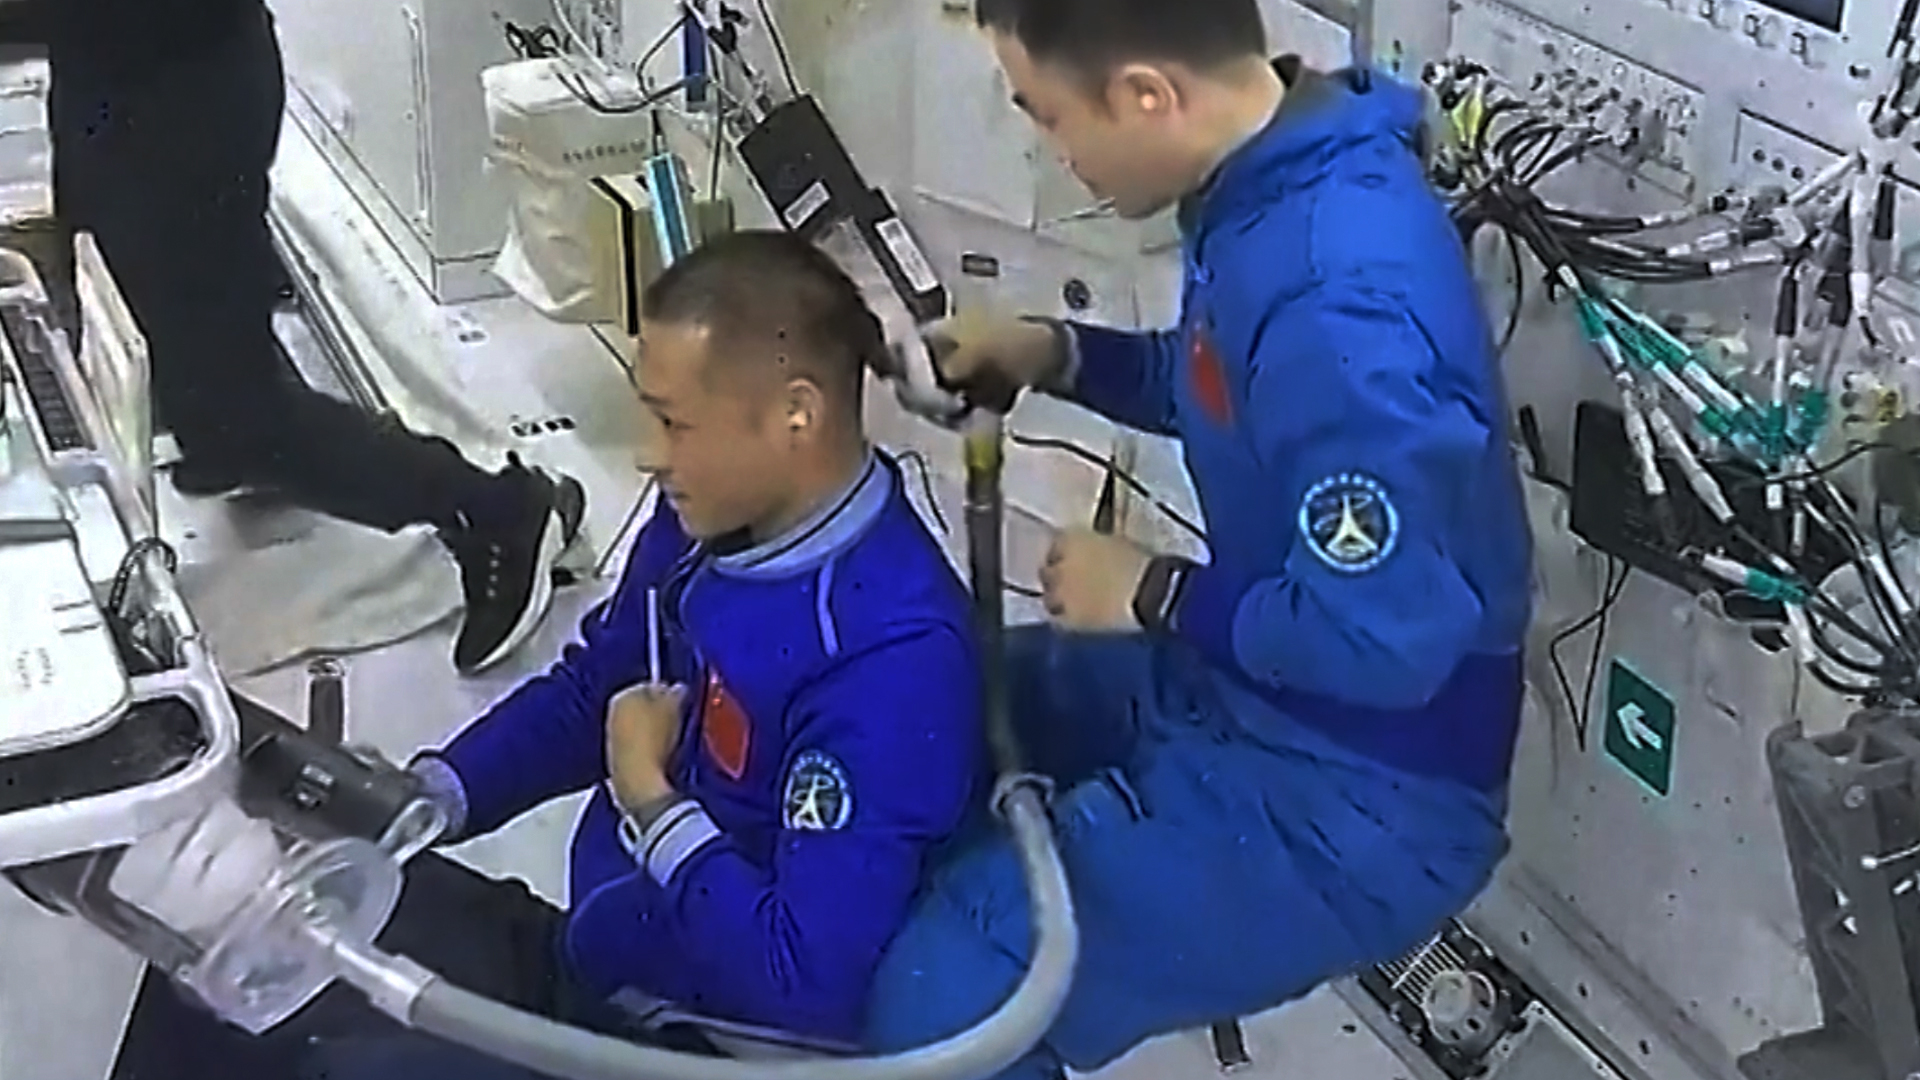 un astronauta chino con un traje de vuelo azul le corta el pelo a su colega vestido de manera similar dentro de una estación espacial.